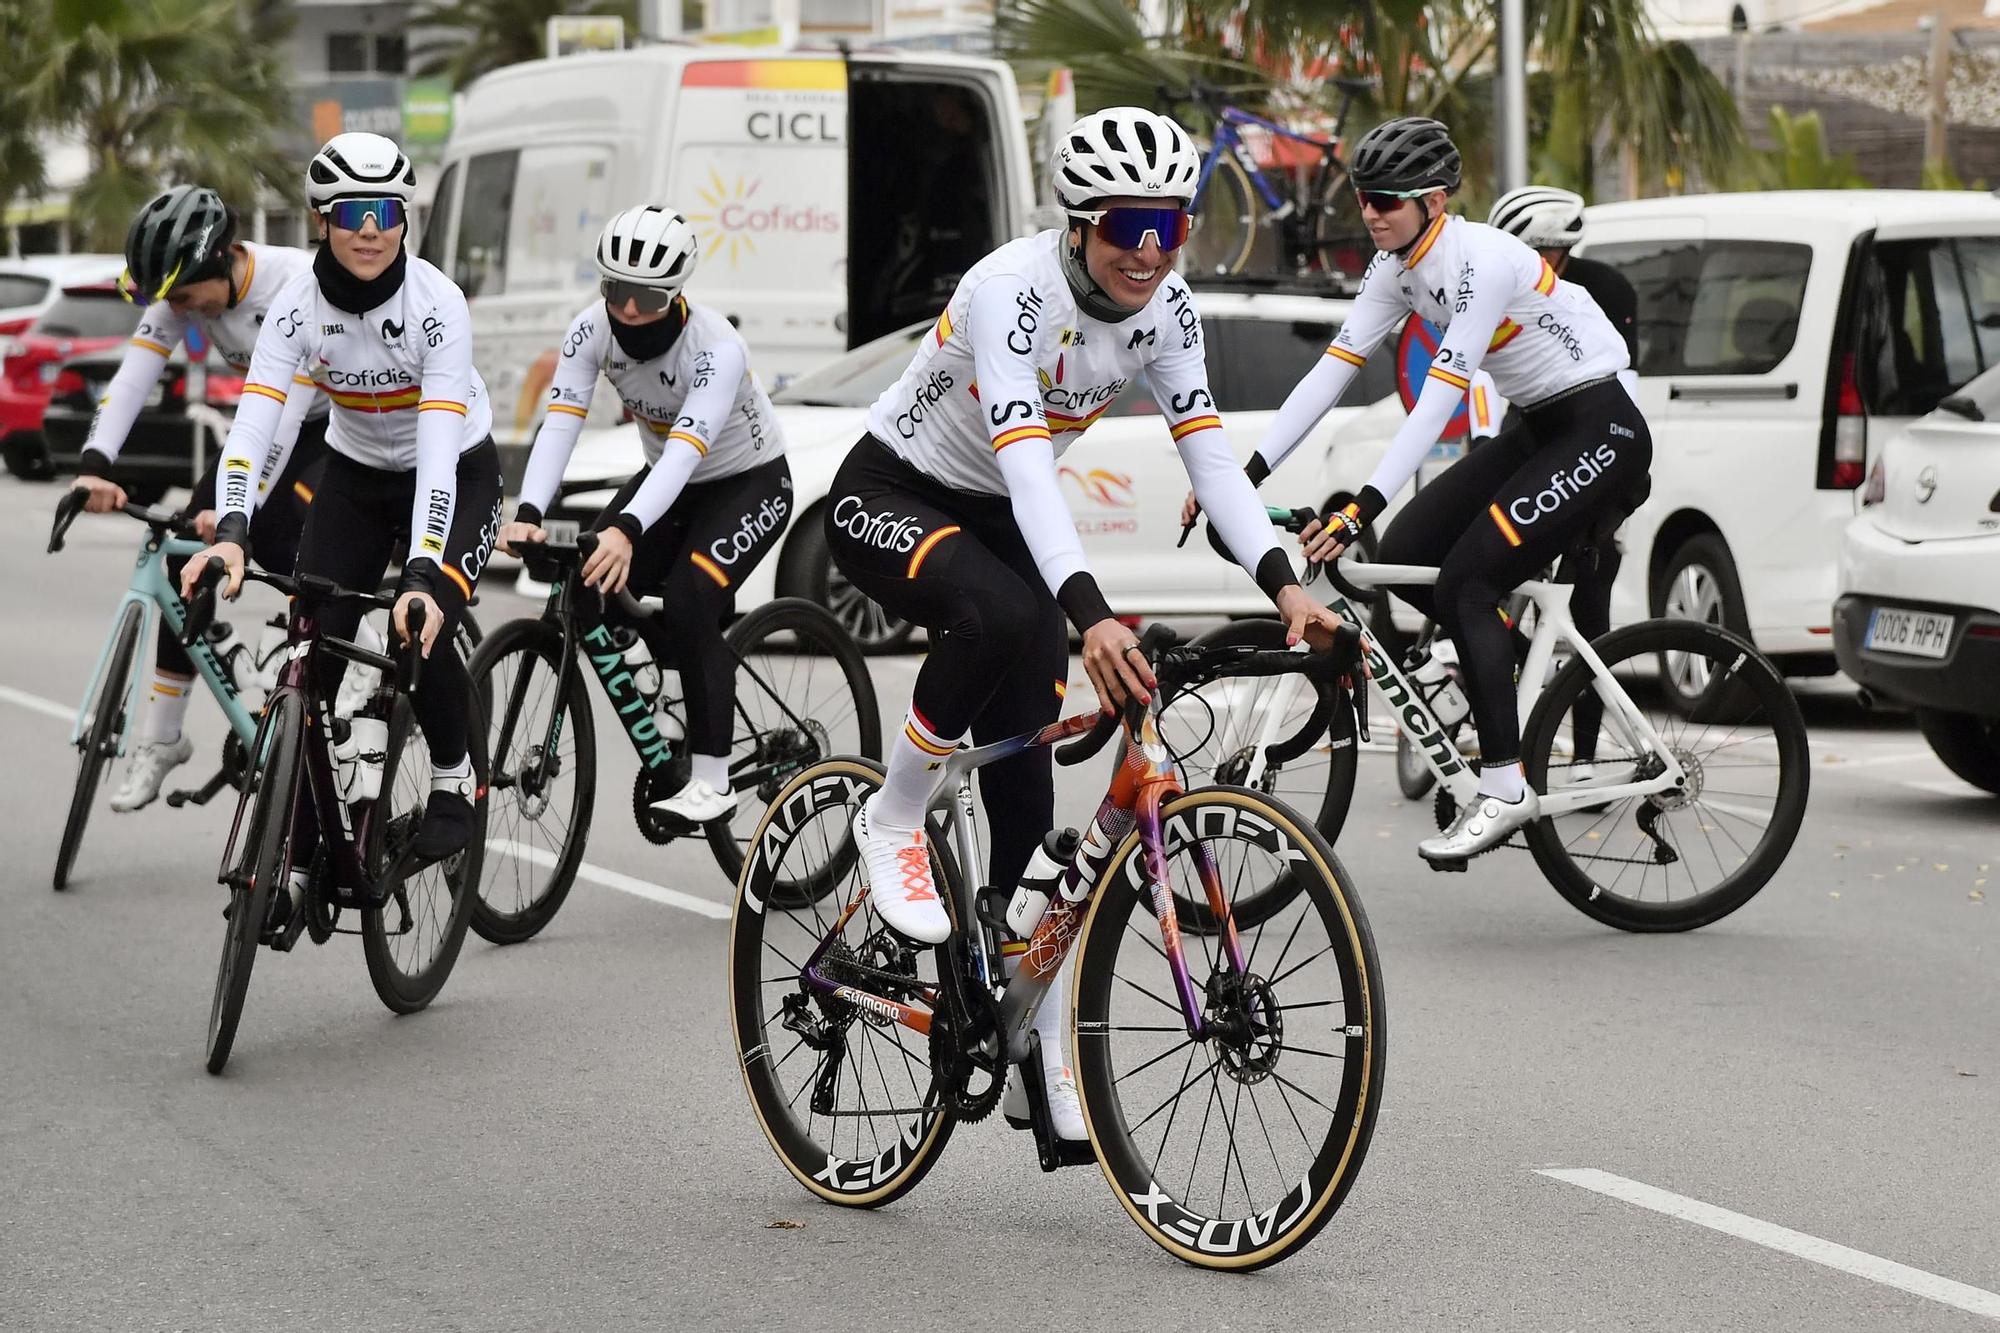 La selección española de ciclismo femenino entrena antes de su debut en la Challenge